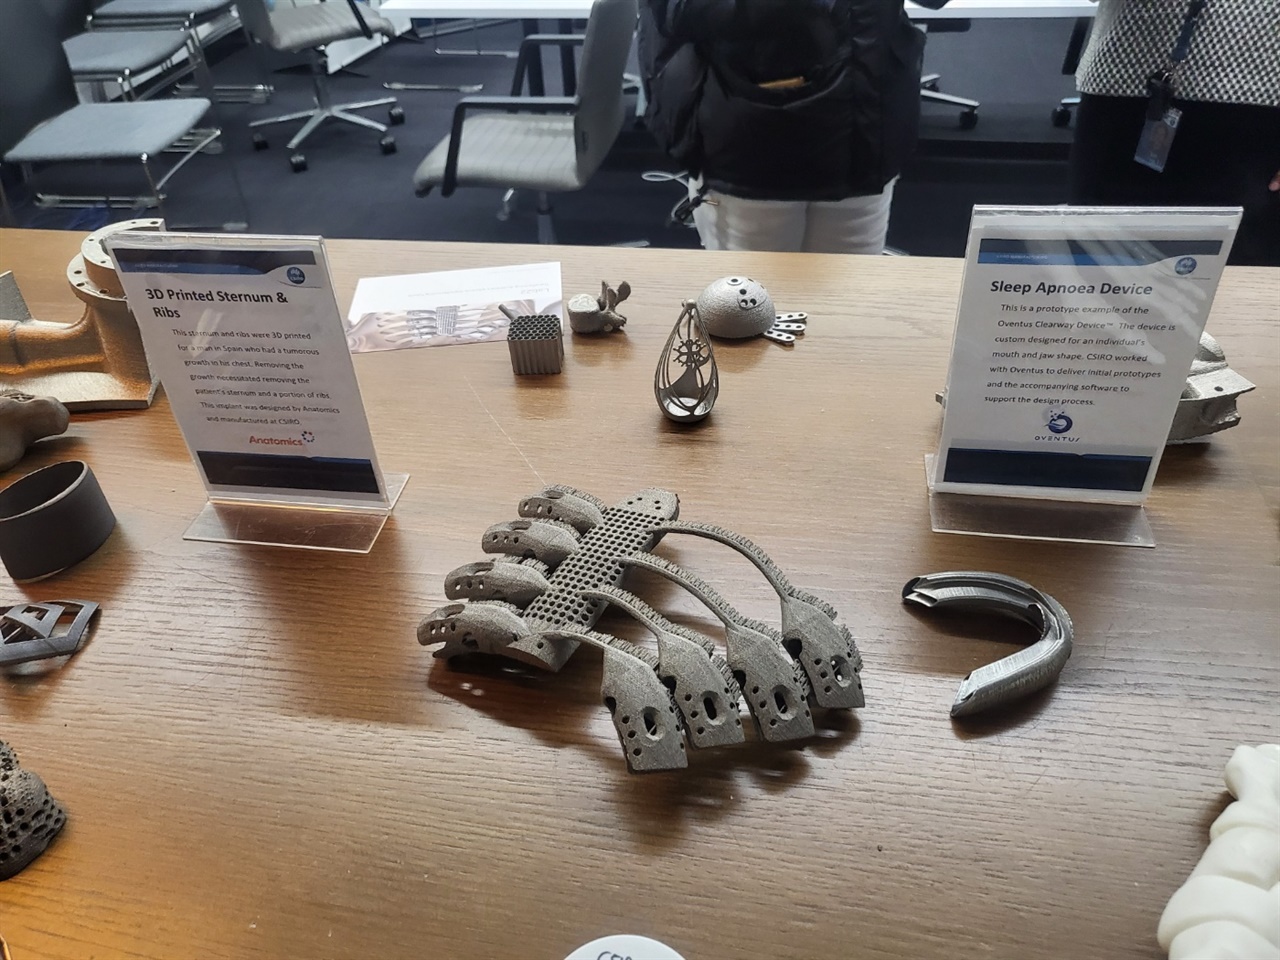 티타늄을 재료로 한 3D프린팅 기법으로 만든 갈비뼈 일부와 마우스피스 등 상용화된 제품들.